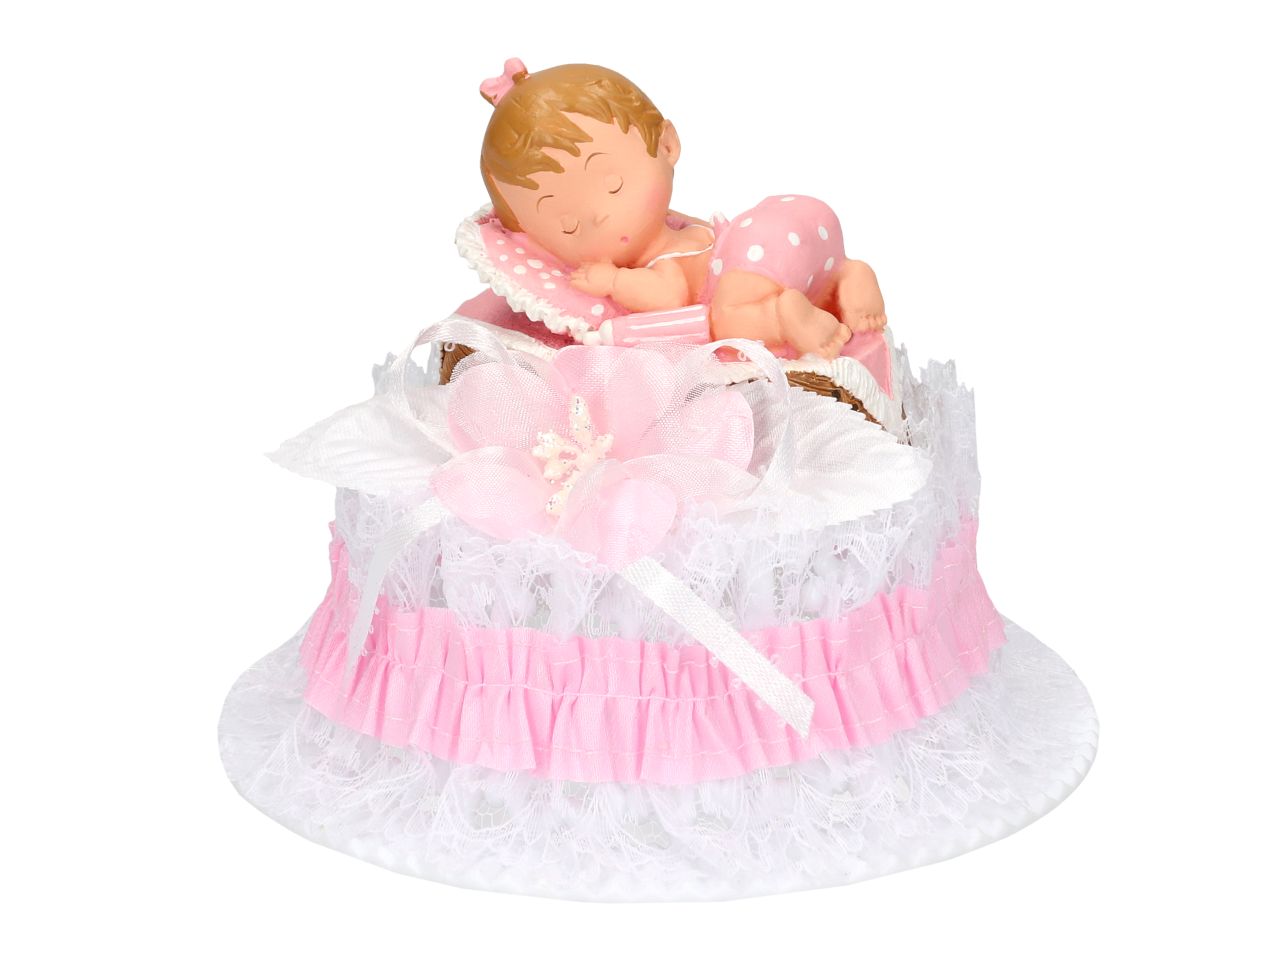 Tortenaufsatz: Baby im Korb, Rosa, nicht essbar, 20 x 13 x 13 cm